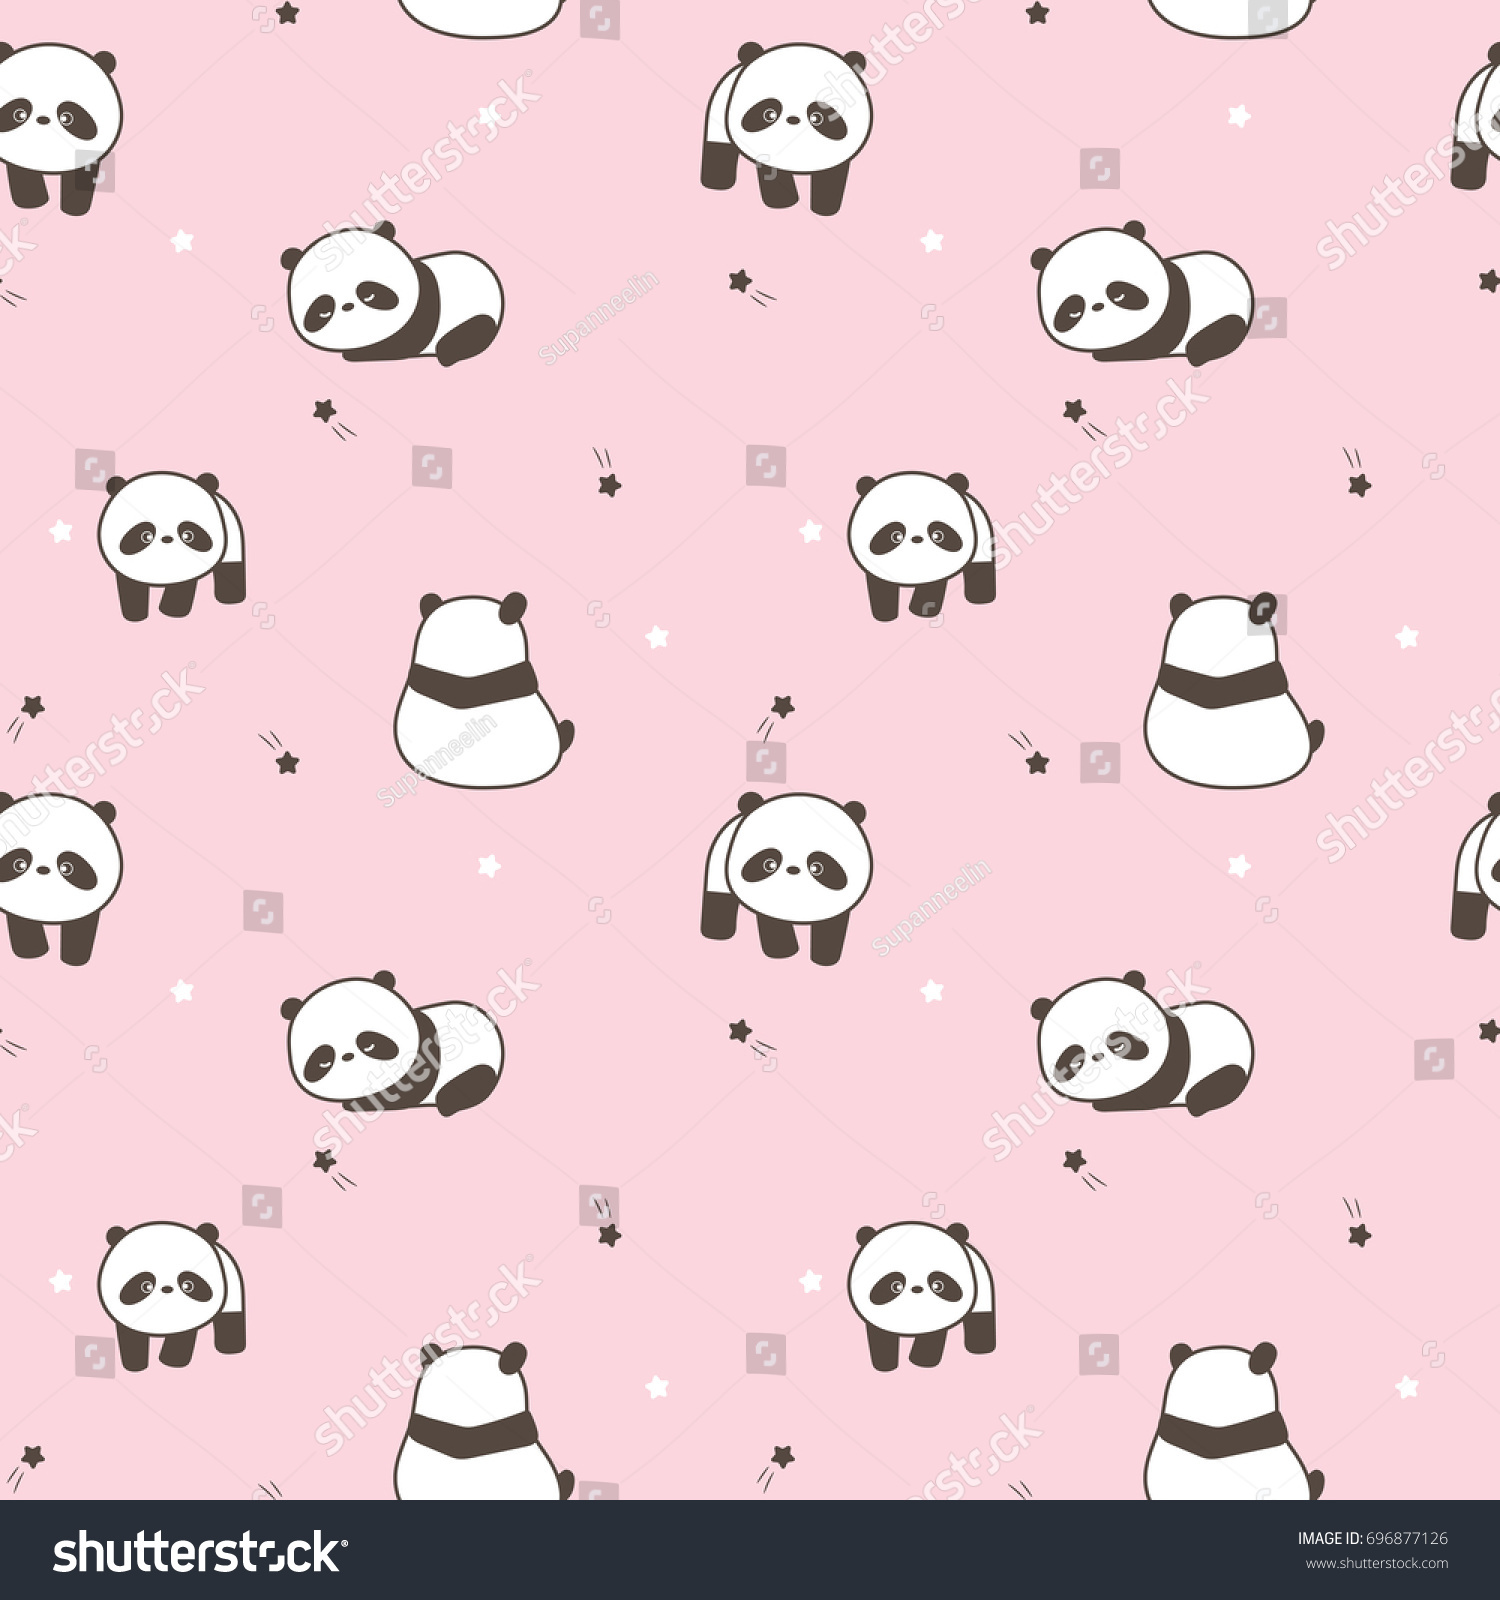 Galeri Gambar Kartun Panda Pink Phontekno